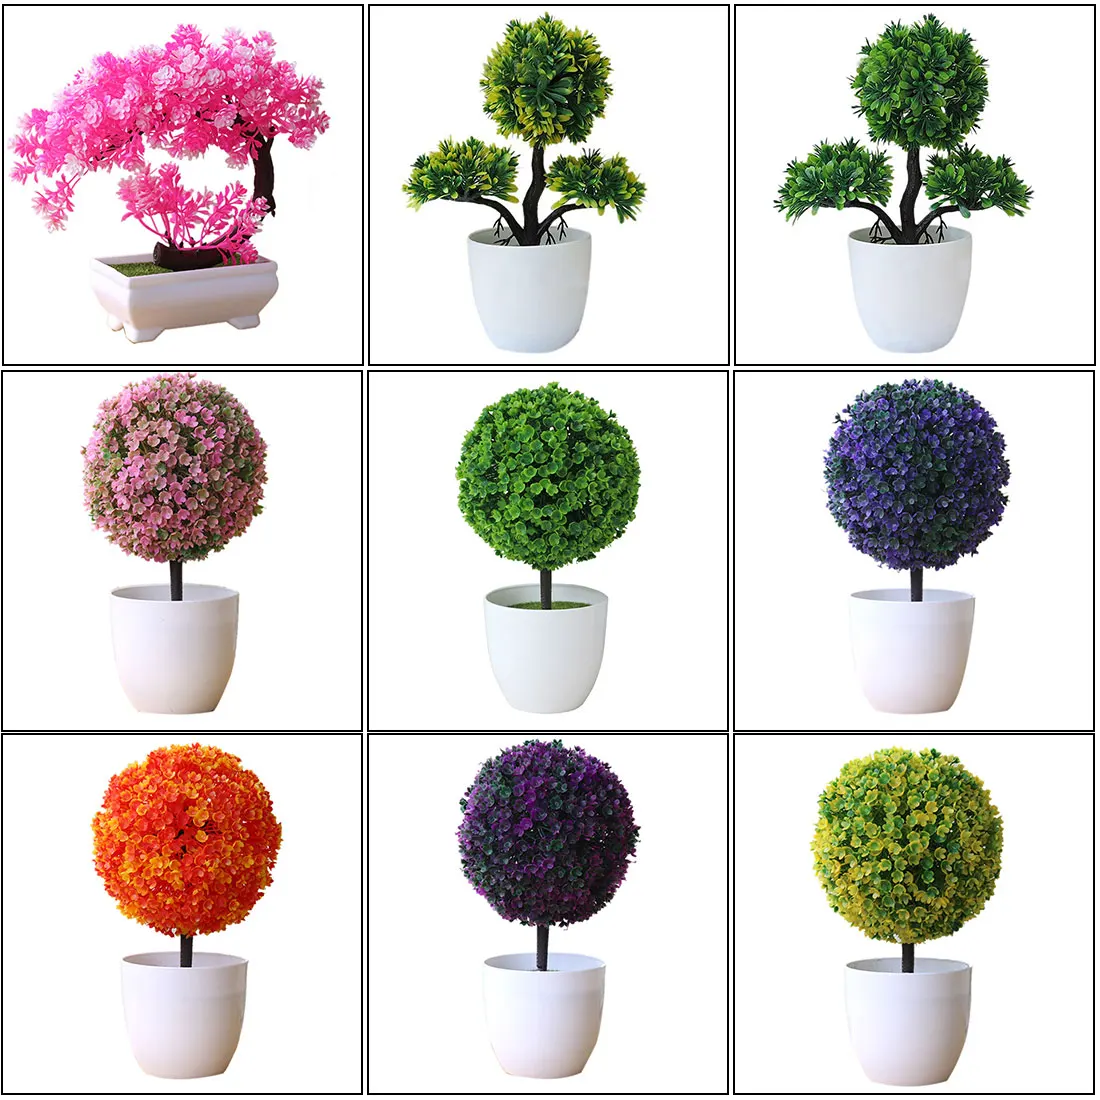 29 стилей Маленькие искусственные растения бонсай дерево горшок растения поддельные цветы украшения в горшках для украшения дома отель сад Декор